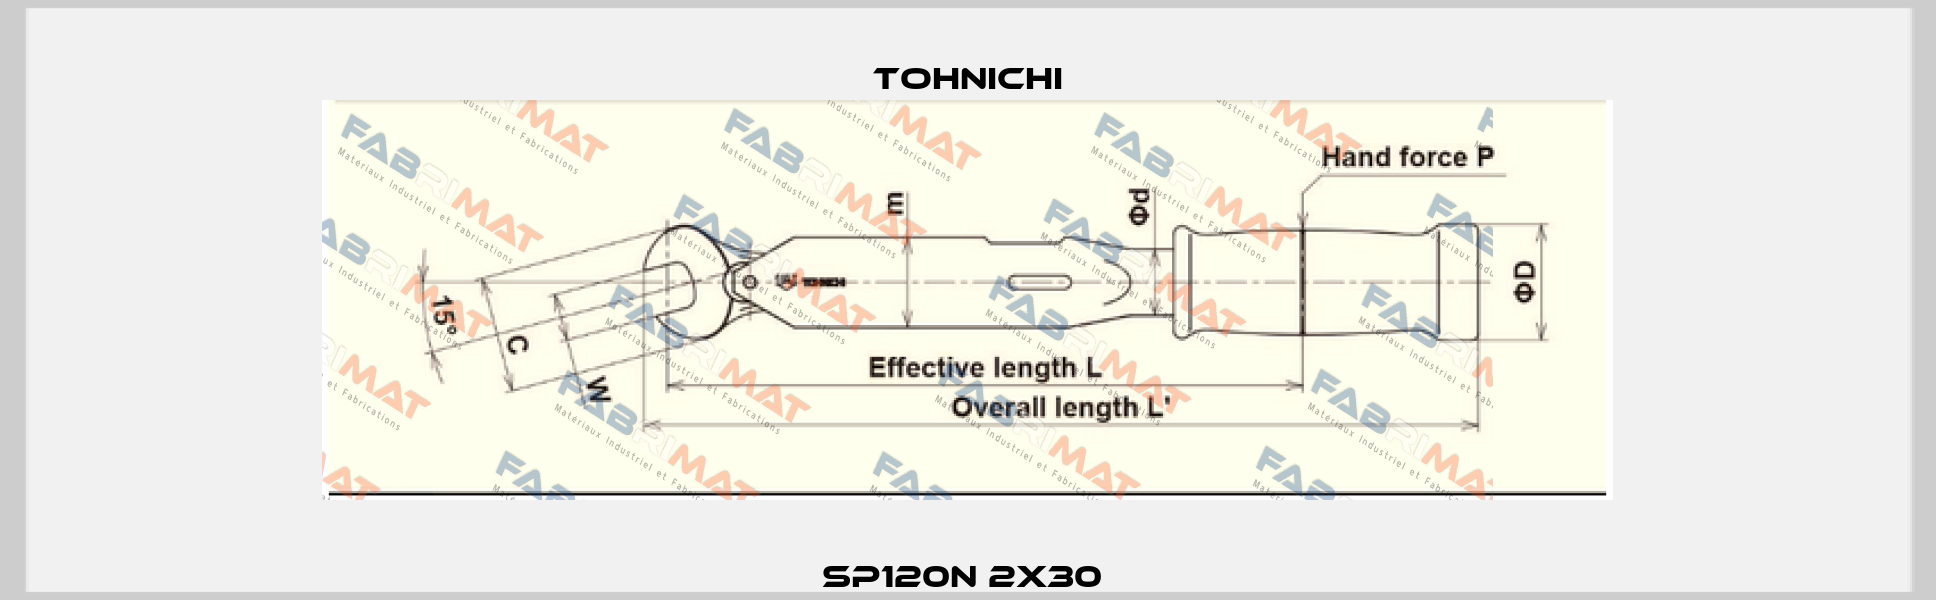 SP120N 2x30  Tohnichi